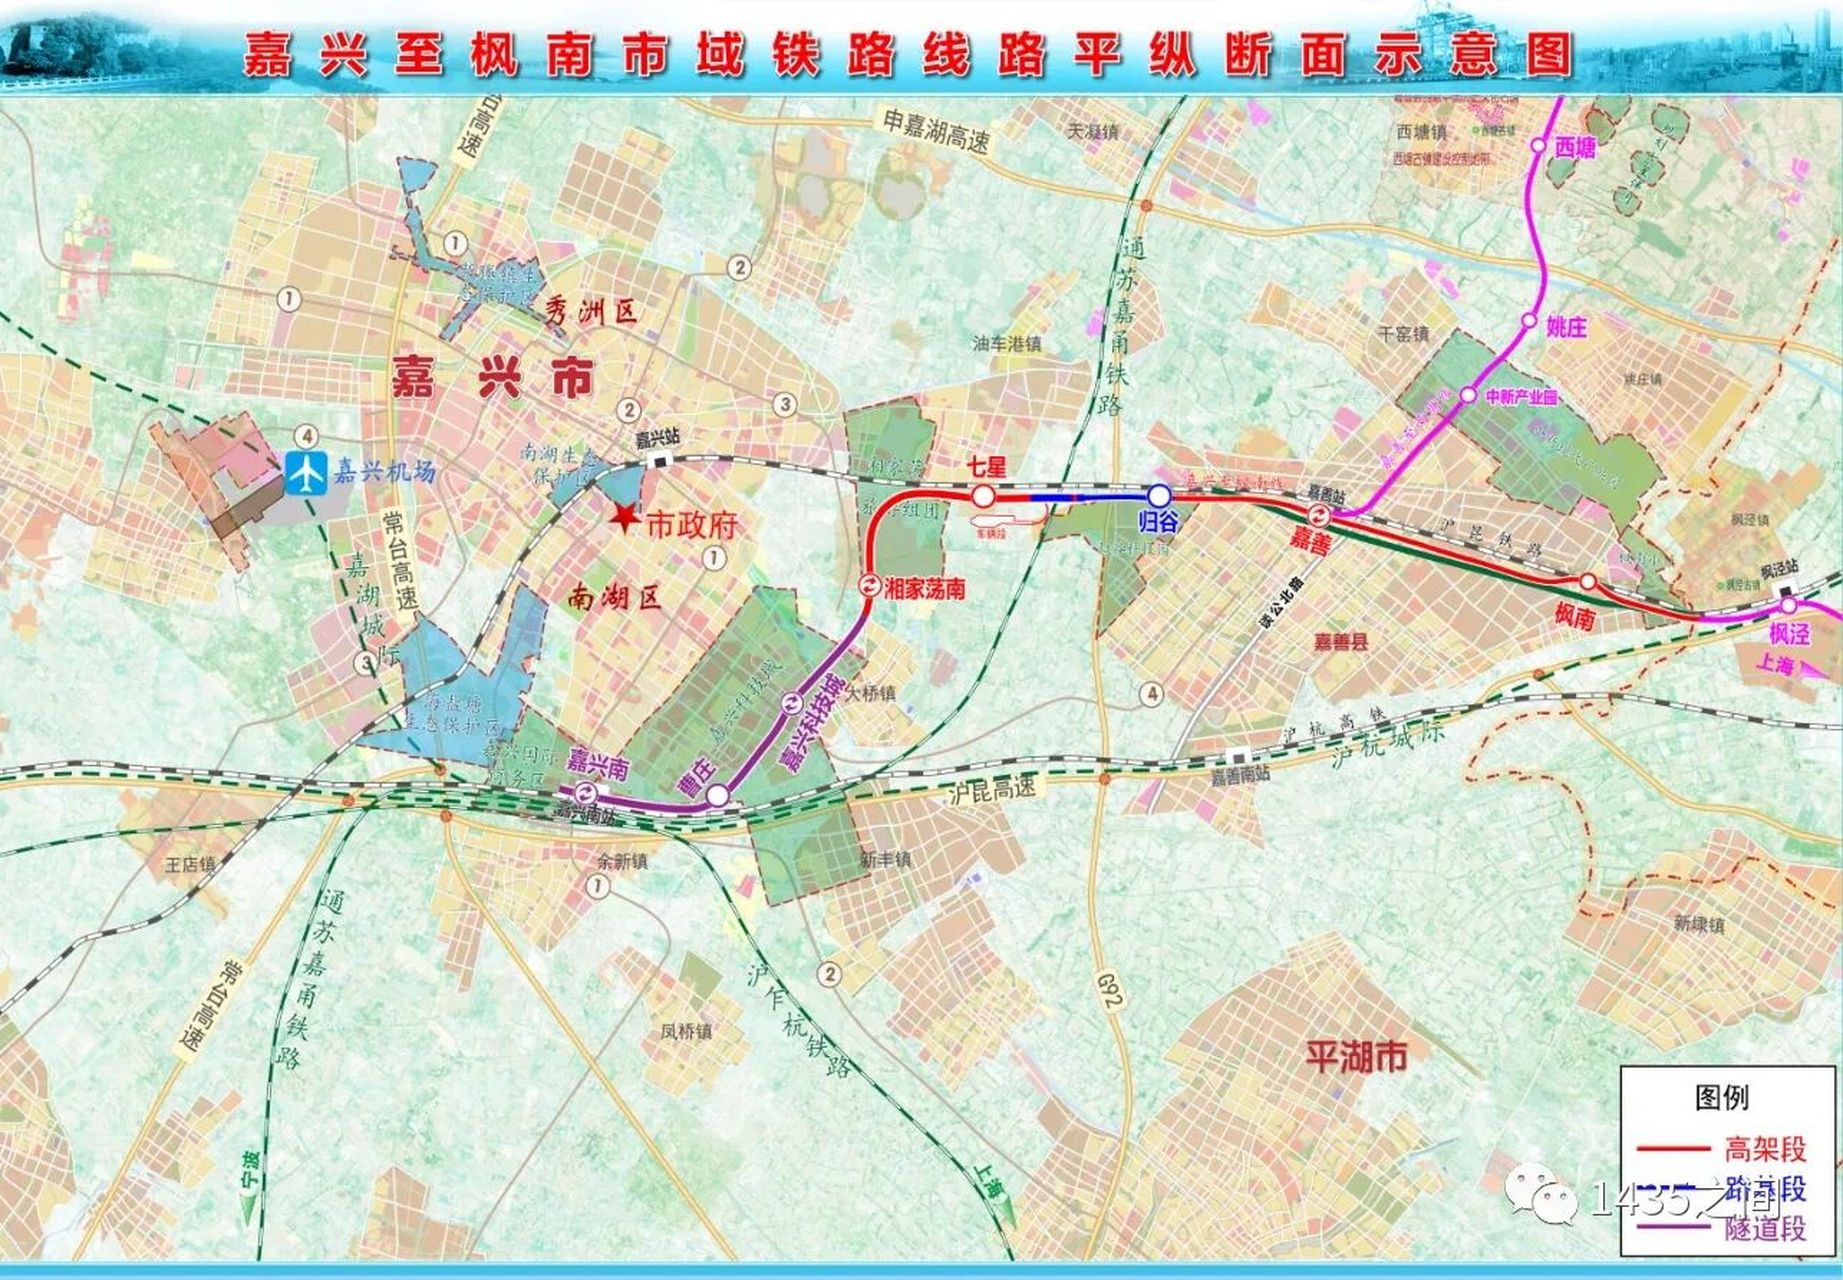 嘉兴至枫南市域铁路位于嘉兴市南湖区,嘉善县,线路自沪杭高铁嘉兴